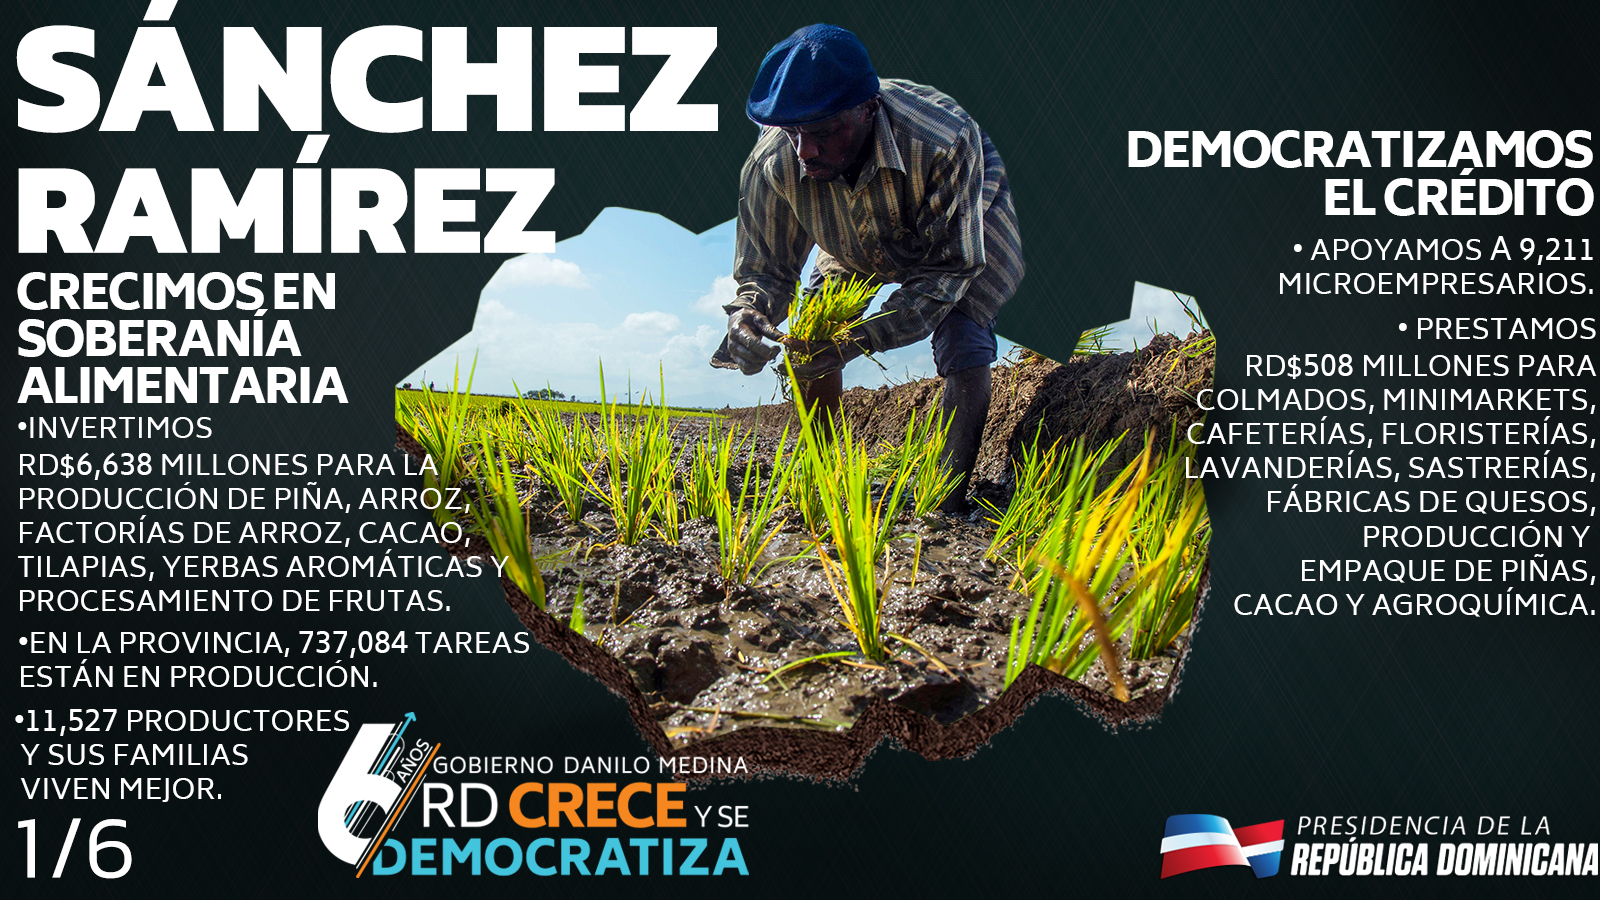 REPÚBLICA DOMINICANA: Seis años de bienestar para Sánchez Ramírez: renovamos contrato Barrick Gold, logramos crecimiento agropecuario y acercamos salud a la gente